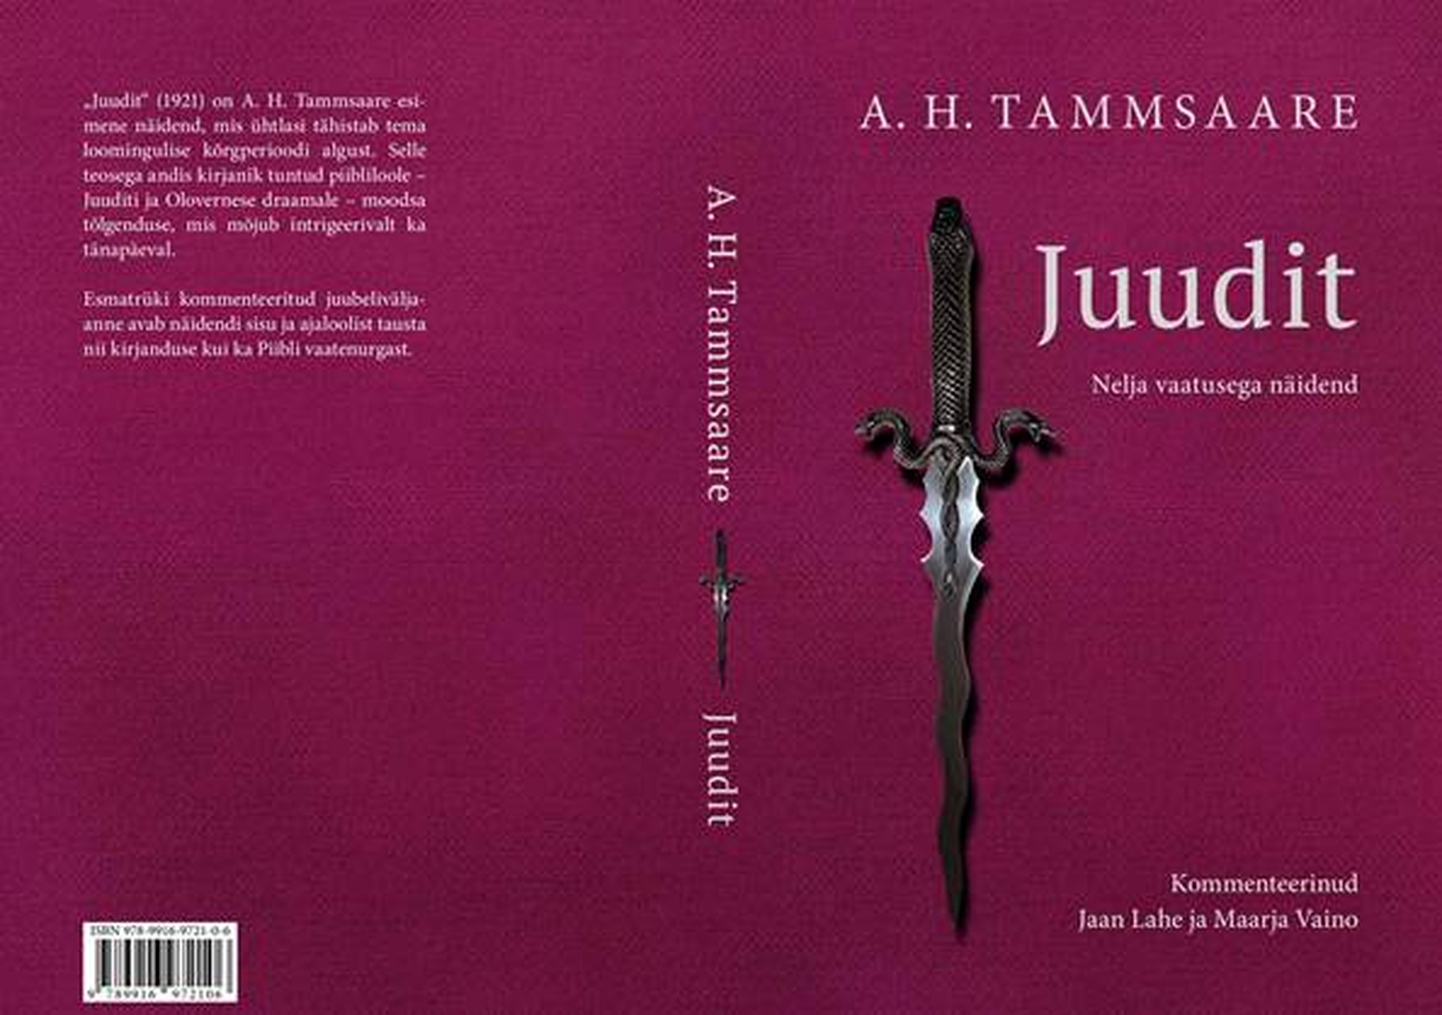 A. H. Tammsaare näidendi «Juudit» kommenteeritud väljaanne.